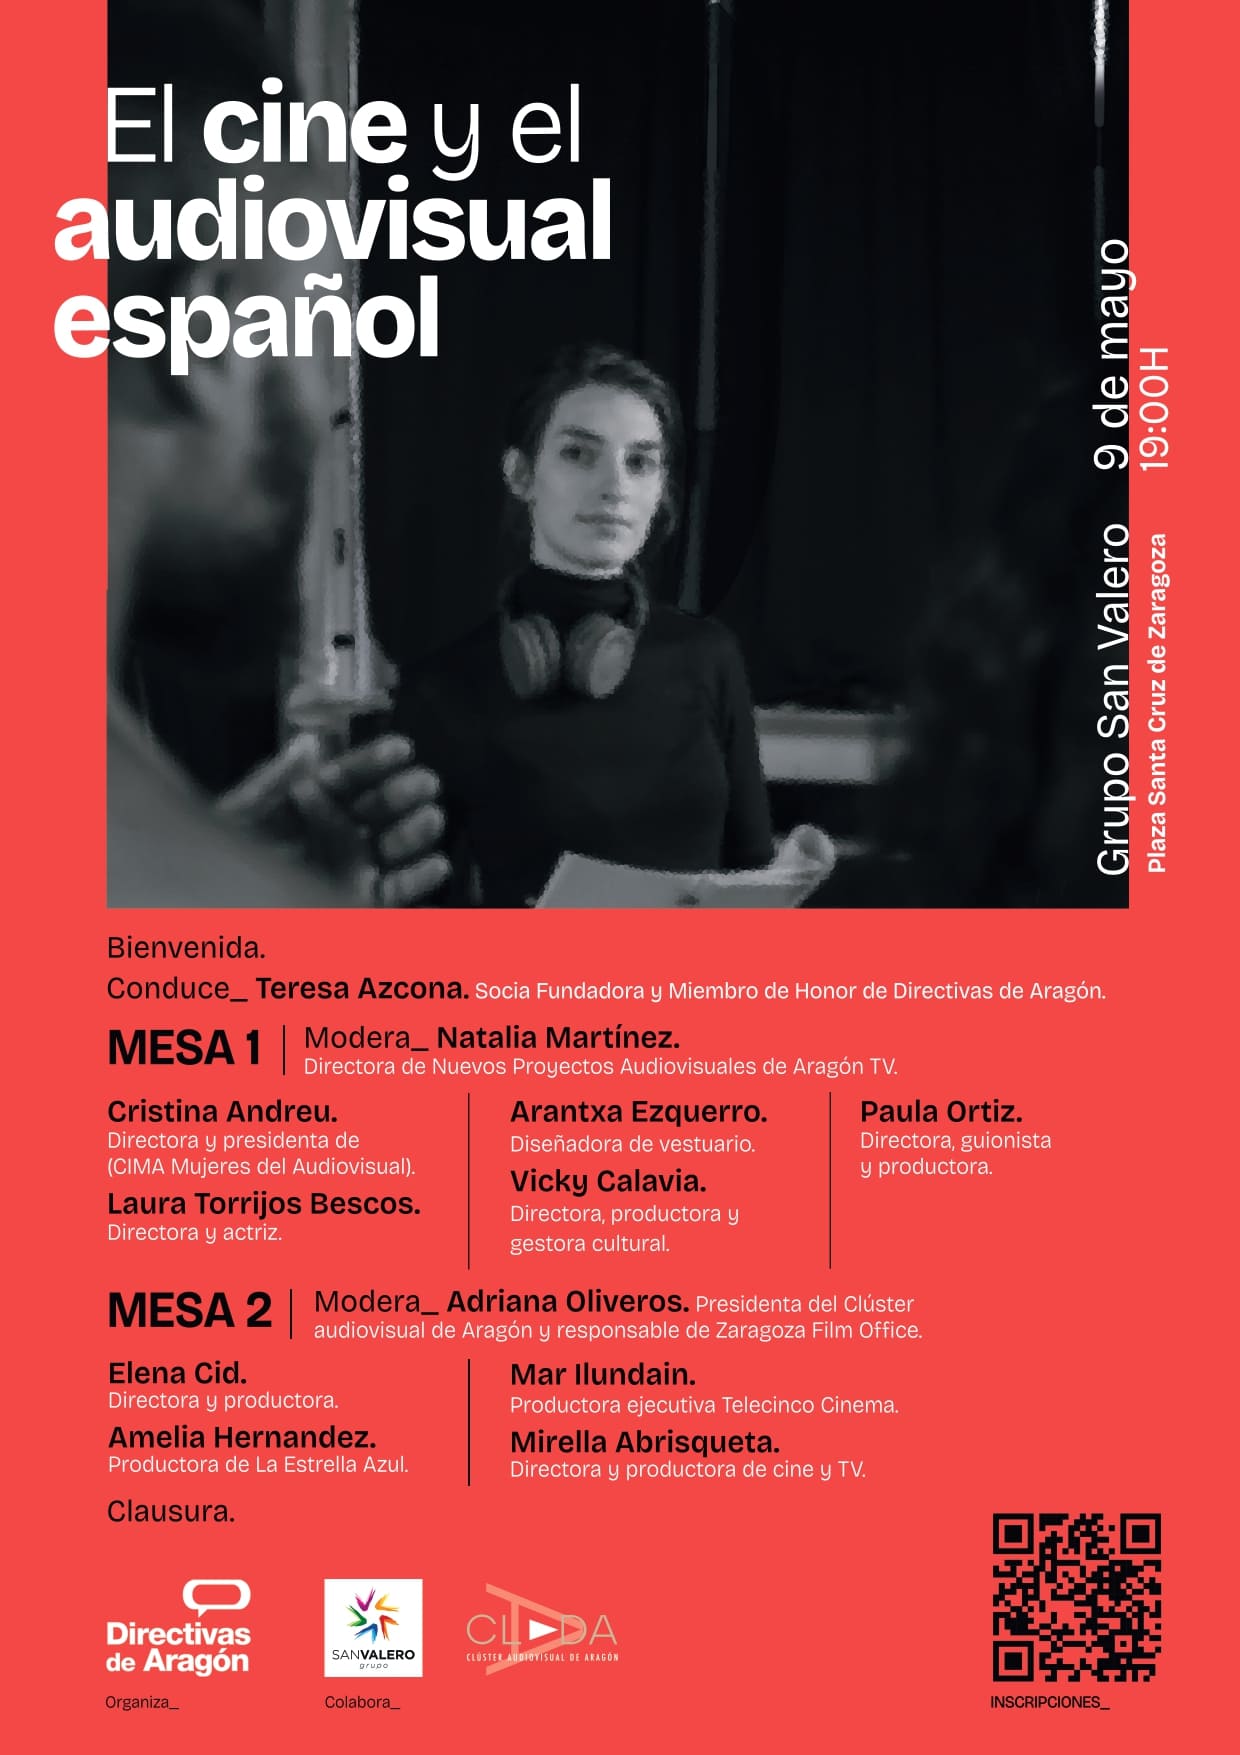 9 de mayo: JORNADA “El cine y audiovisual español”.